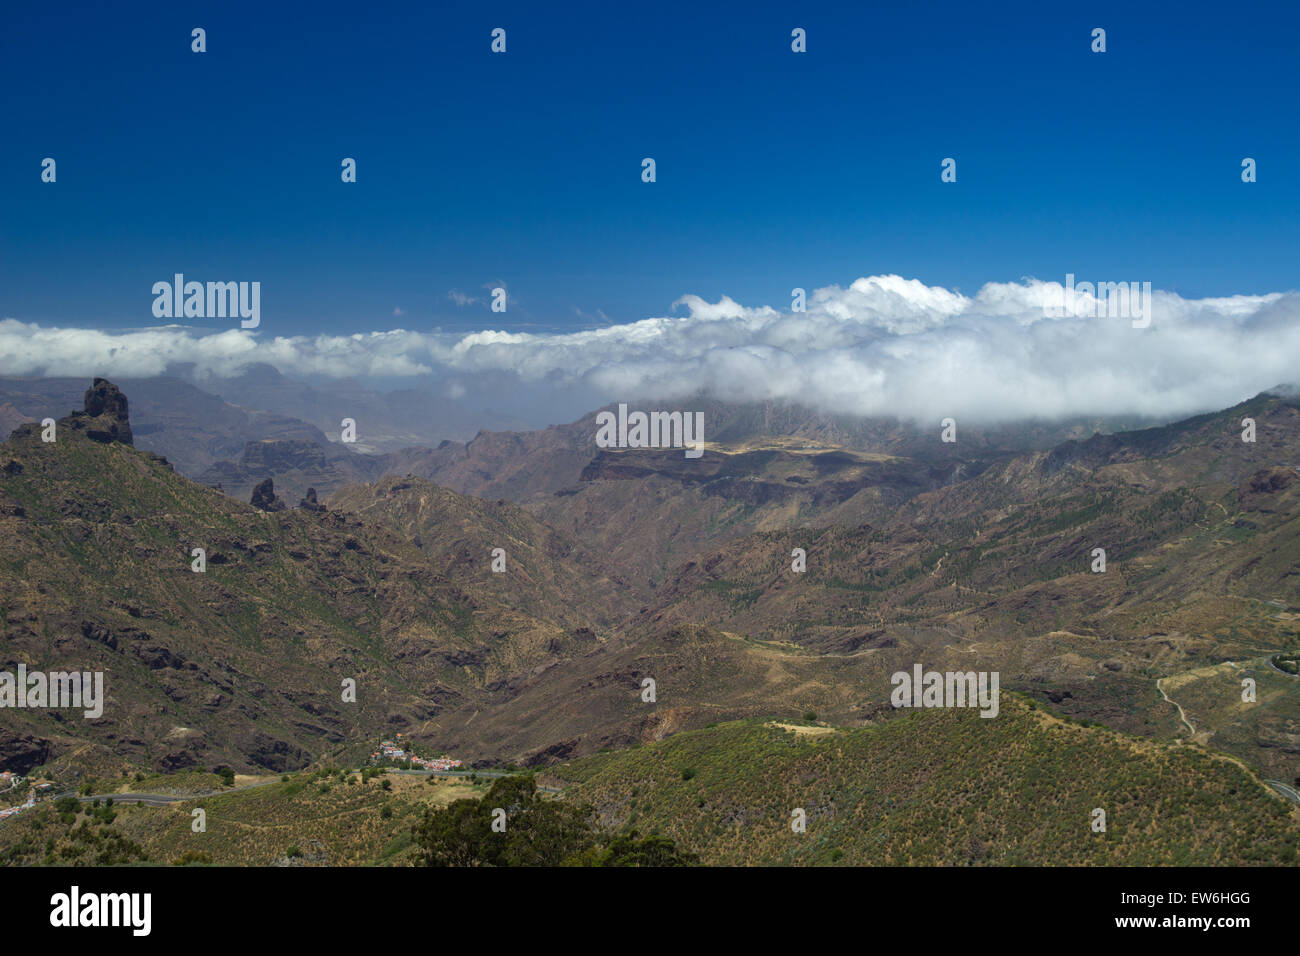 Gran Canaria, Caldera de Tejeda im Mai, Altavista-Gebirge ist von Wolken bedeckt Stockfoto